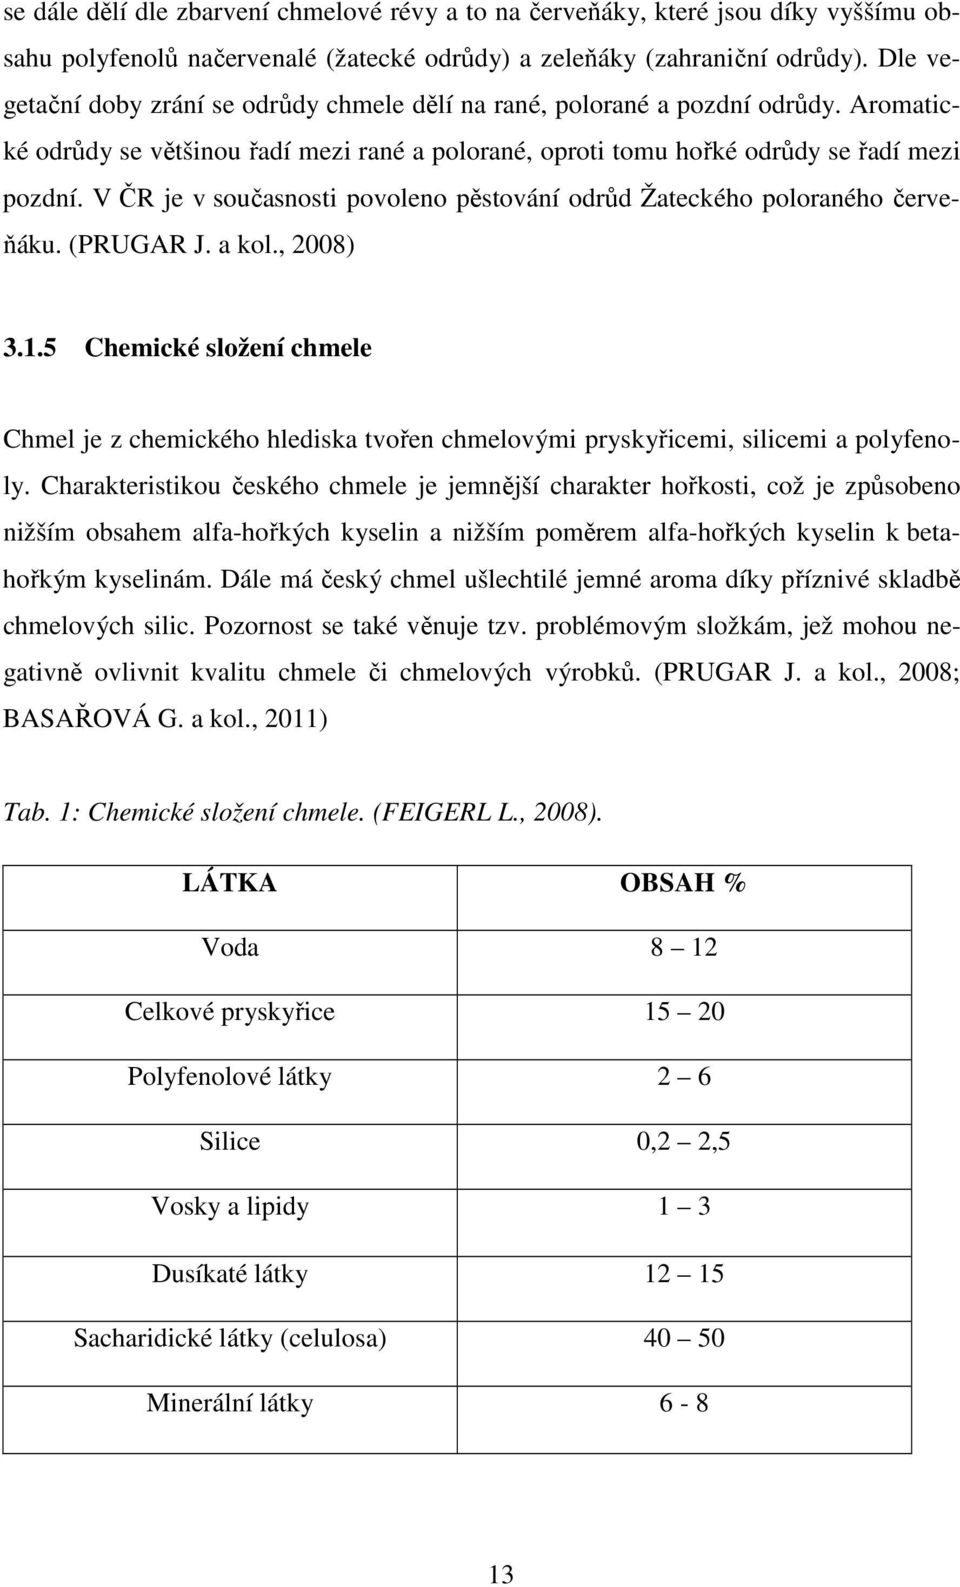 V ČR je v současnosti povoleno pěstování odrůd Žateckého poloraného červeňáku. (PRUGAR J. a kol., 2008) 3.1.